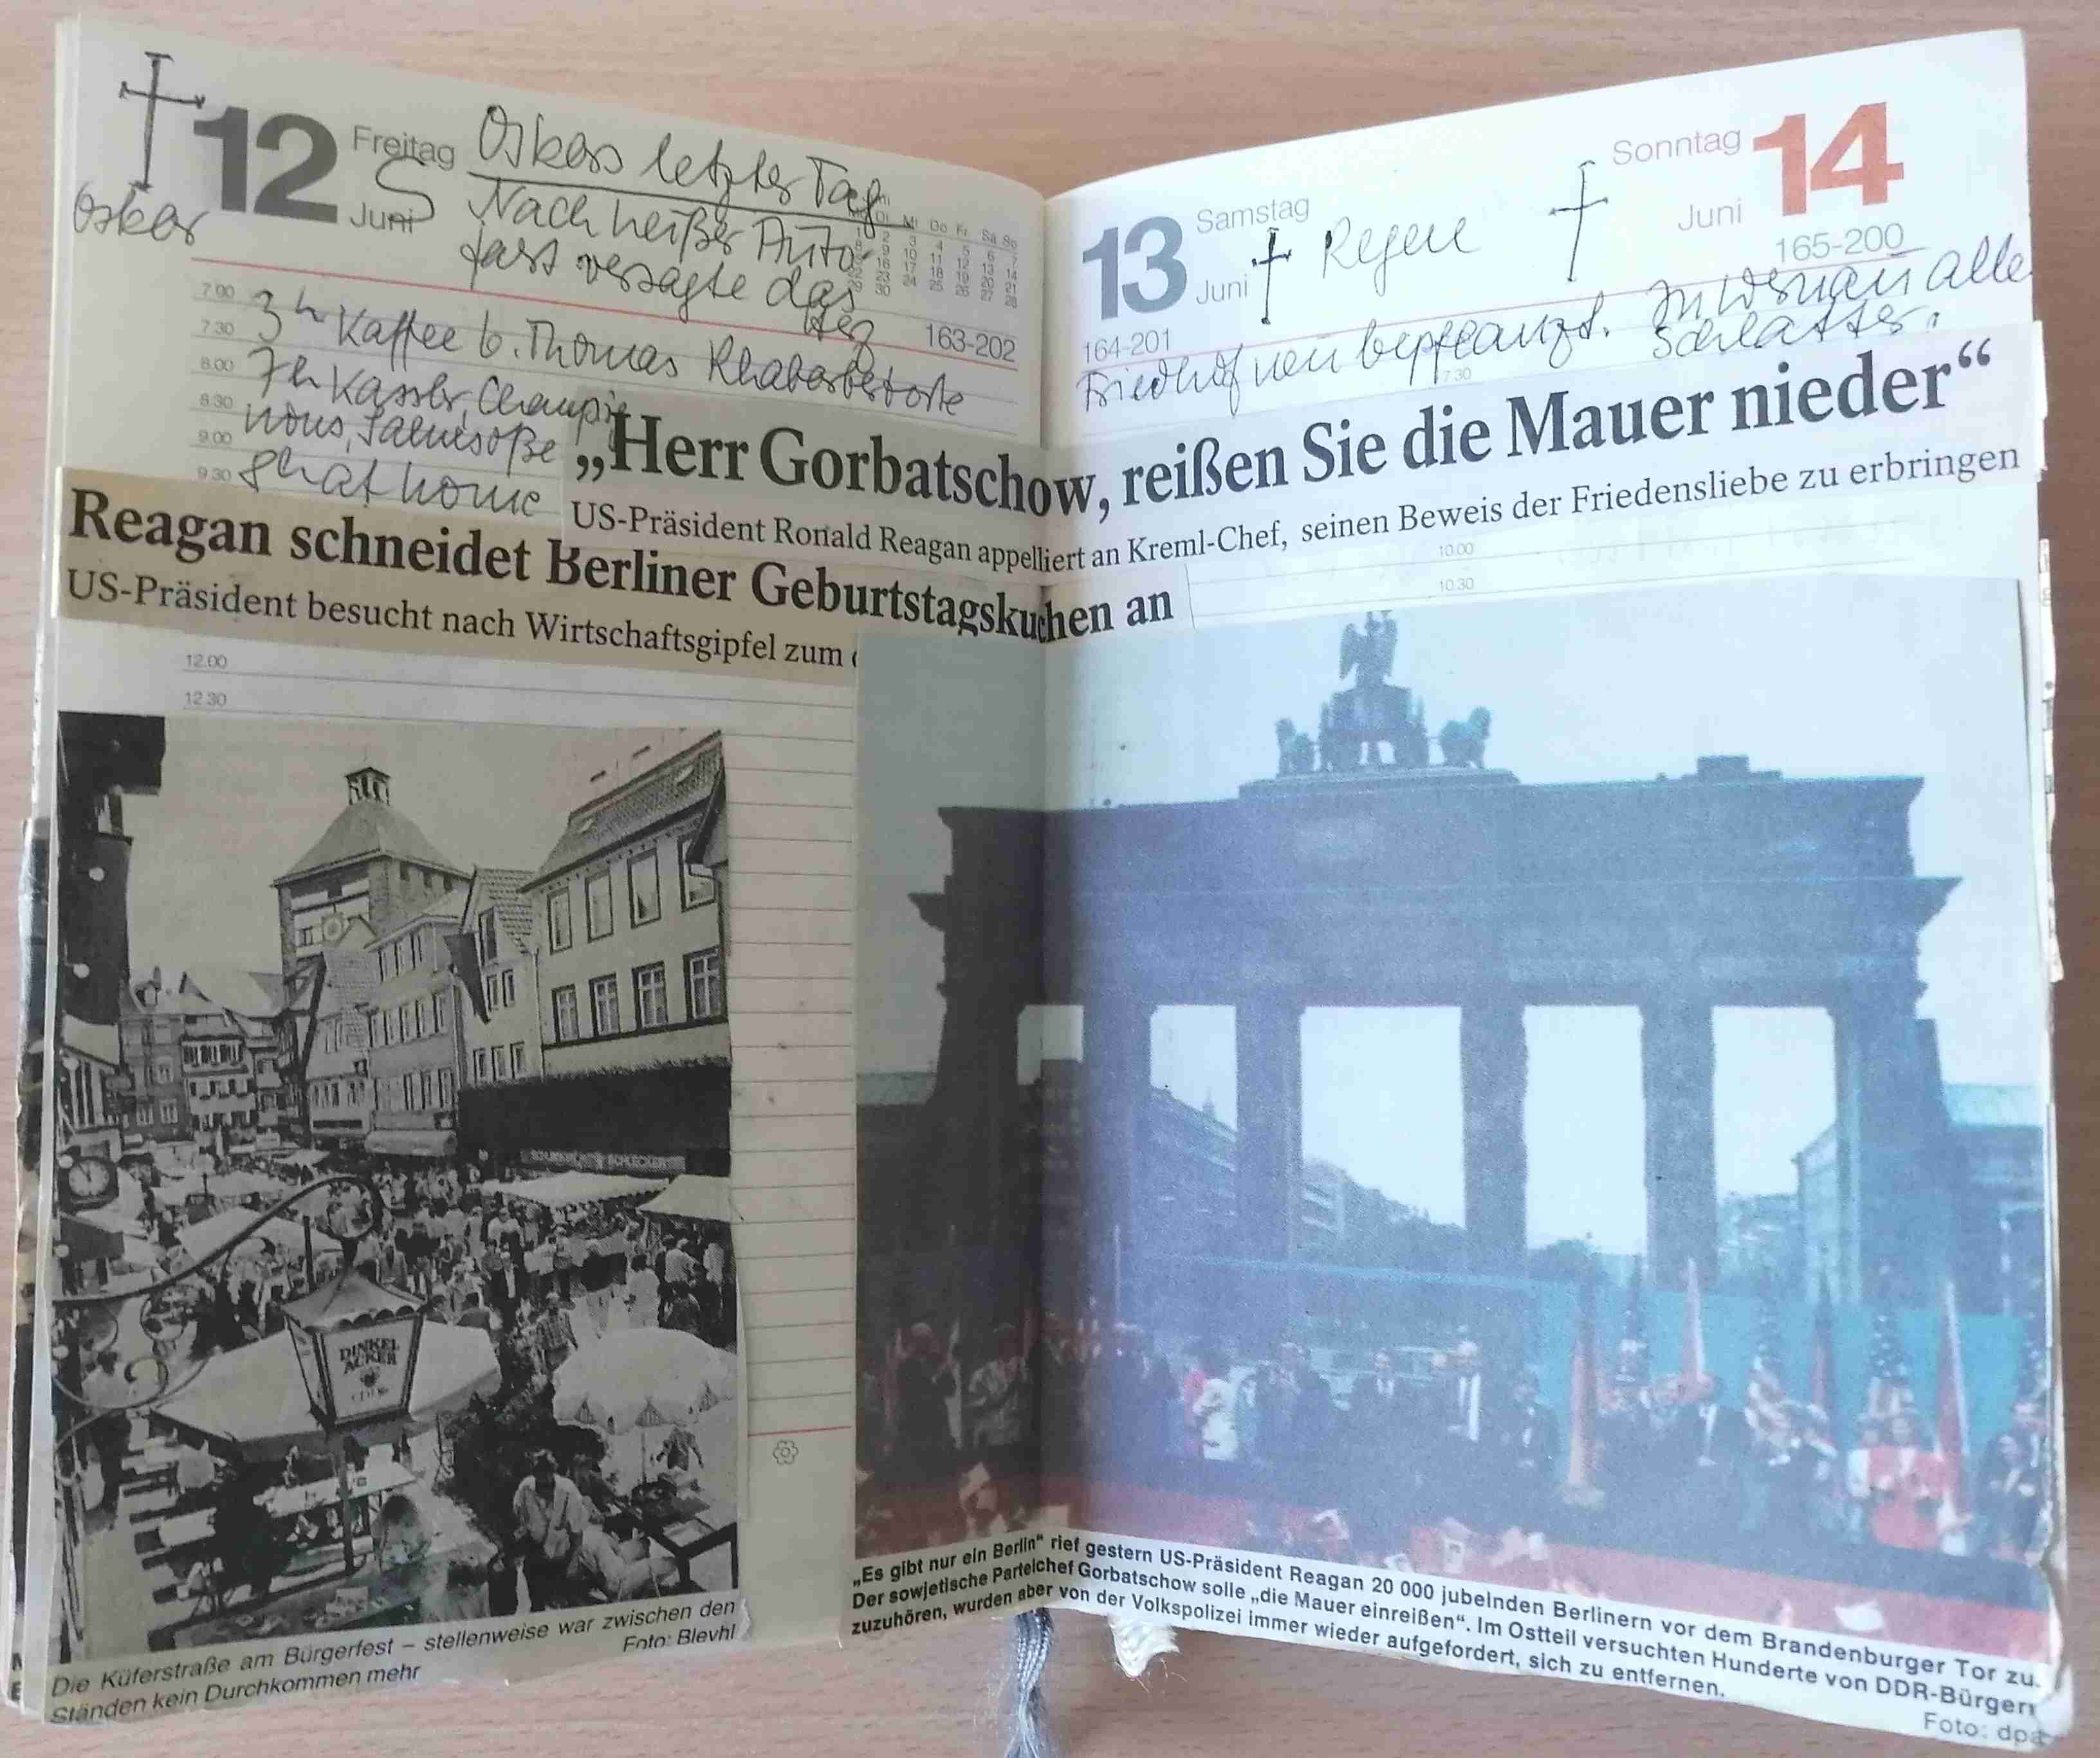 Hiltrud Günthers Kalender vom 12. bis 14. Juni 2023. Im Kalender sind Zeitungsausschnitte eingeklebt wie die Schlagzeile "Herr Gorbatschow, reißen Sie die Mauer nieder" und ein Foto vom Brandenburger Tor. Daneben handschriftliche Notizen wie "Oskars letzter Tag".